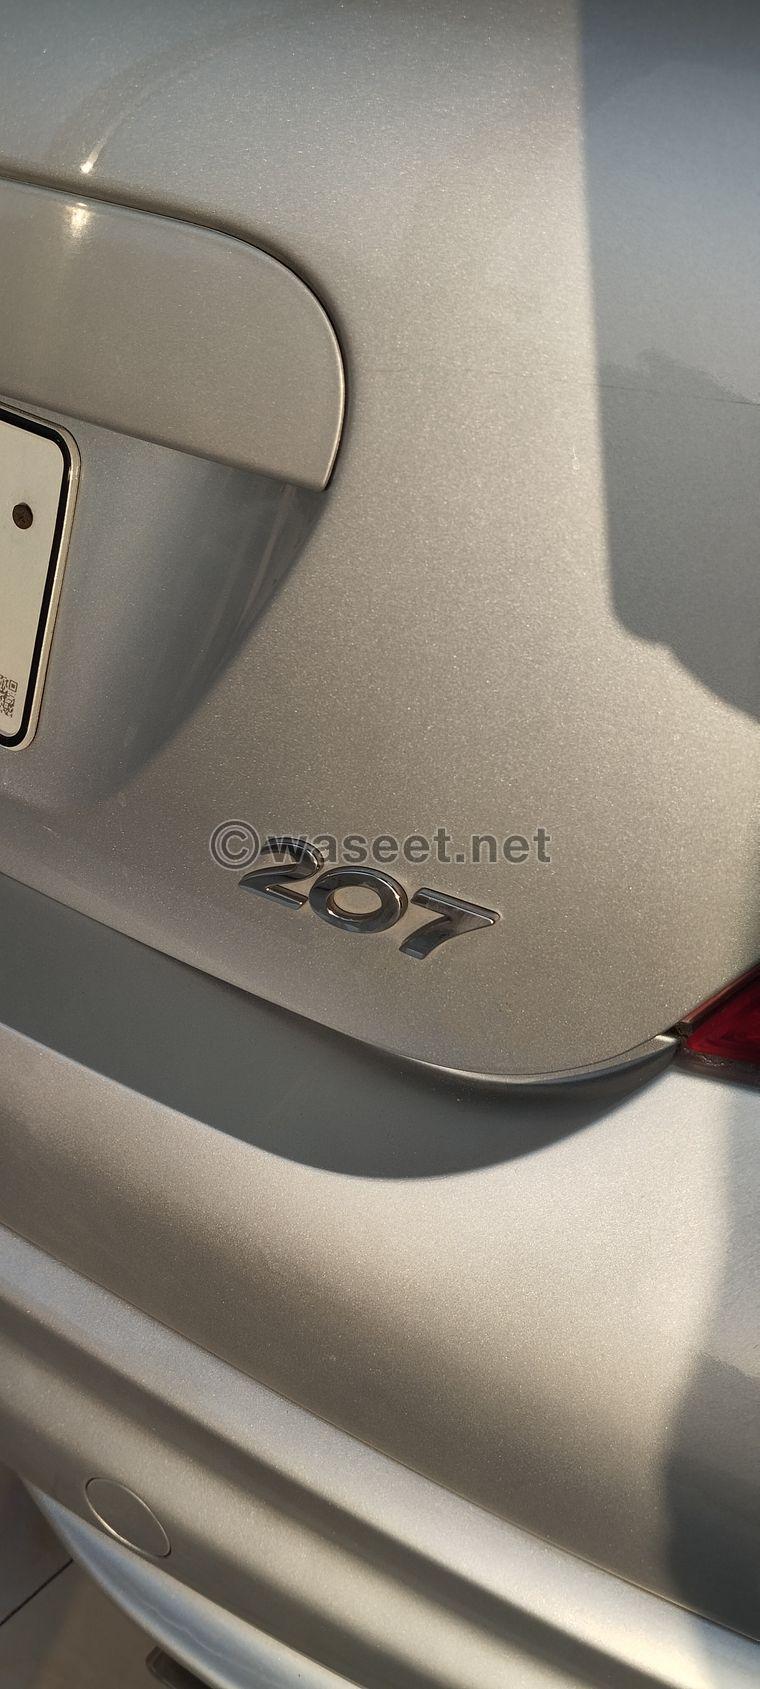 Peugeot 207 hatchback for sale 2011  10